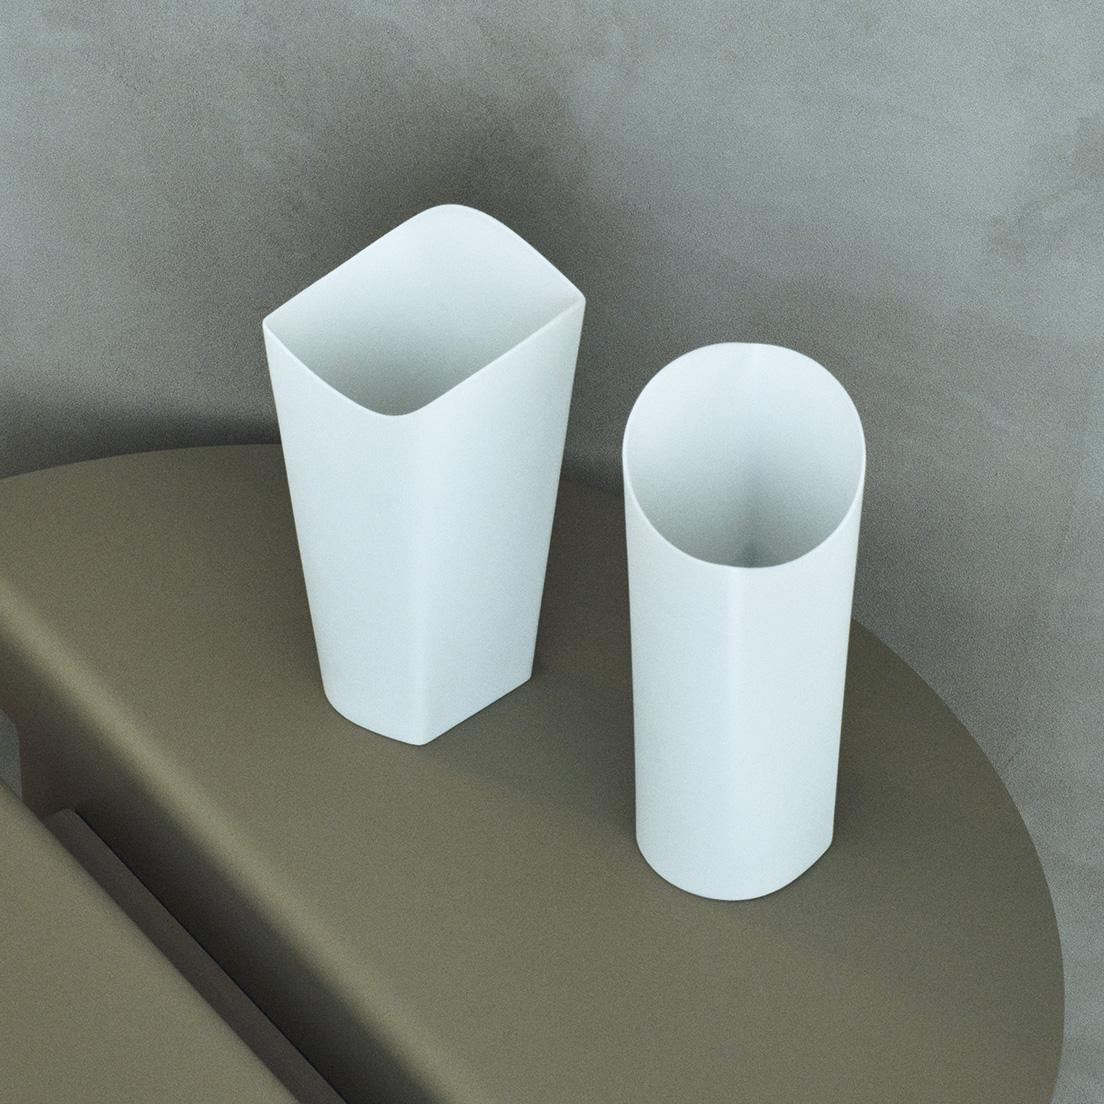 《circle+square vase》さまざまな表情を持つ花瓶。
正面からは歪んでいる形が、角度によって四角柱や円柱に見えるなど、どんどん形を変えていくフラワーベース。13,200円。